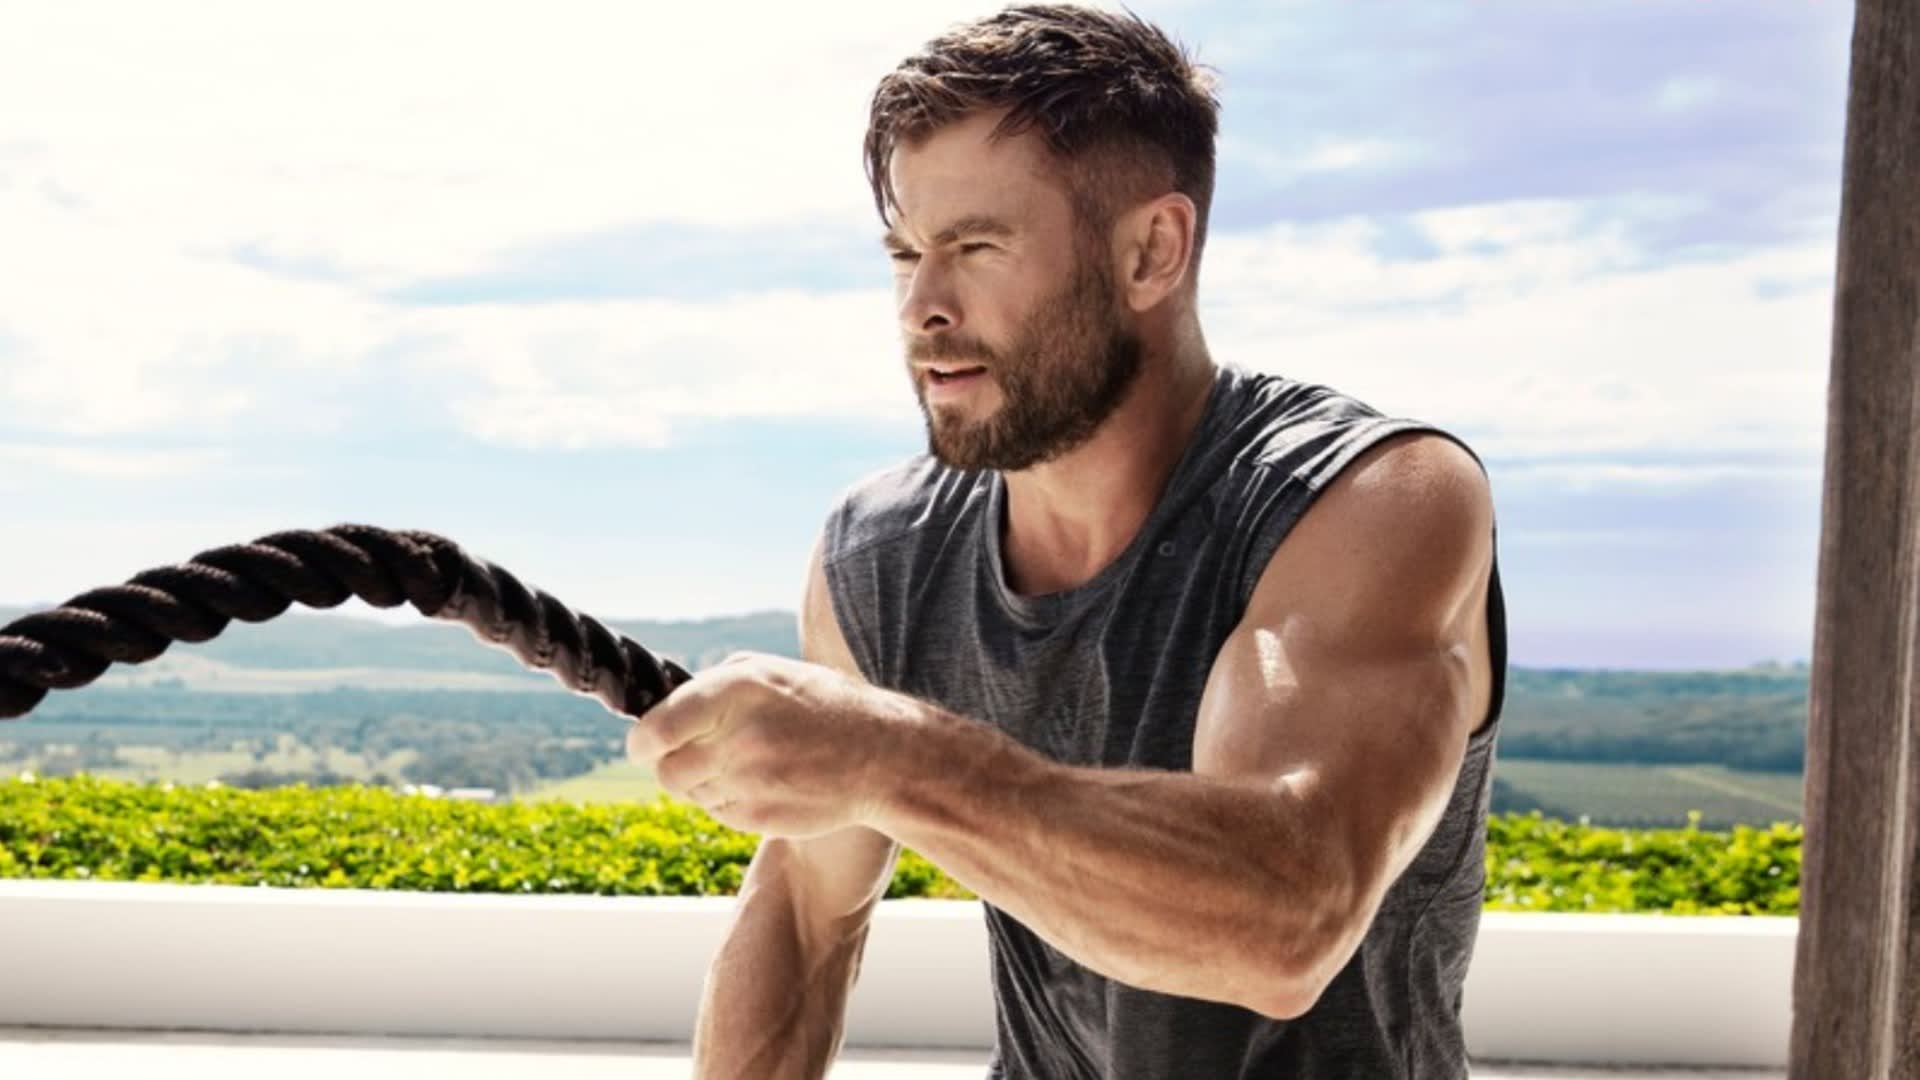 I herec Chris Hemsworth musí neustále dřít, aby nevypadl z formy...